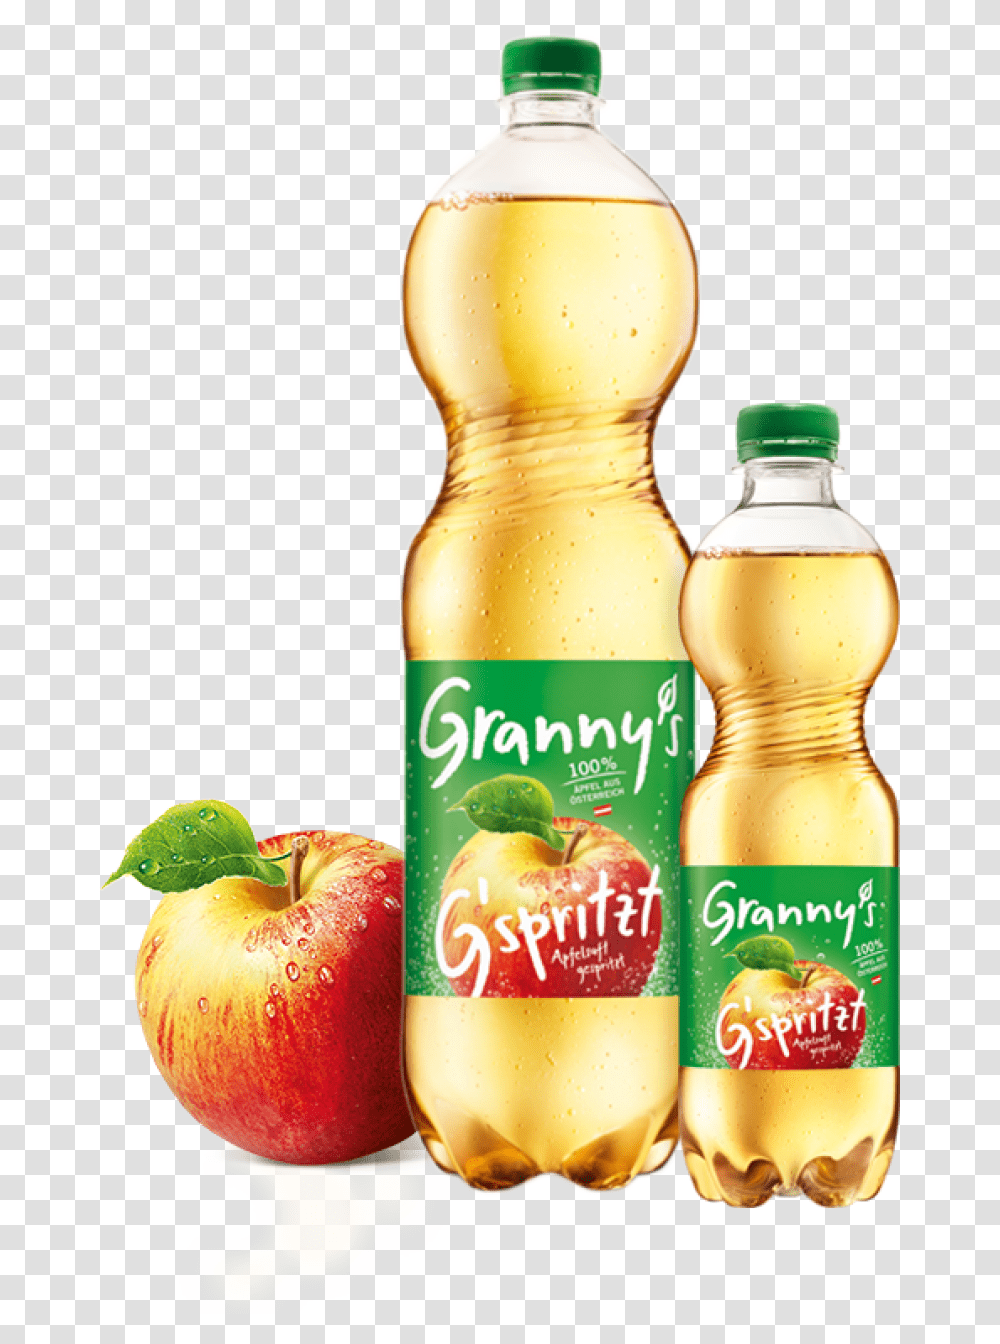 Granny S Sparkling Apple Juice Granny's Apfelsaft, Beverage, Bottle, Orange Juice, Pop Bottle Transparent Png